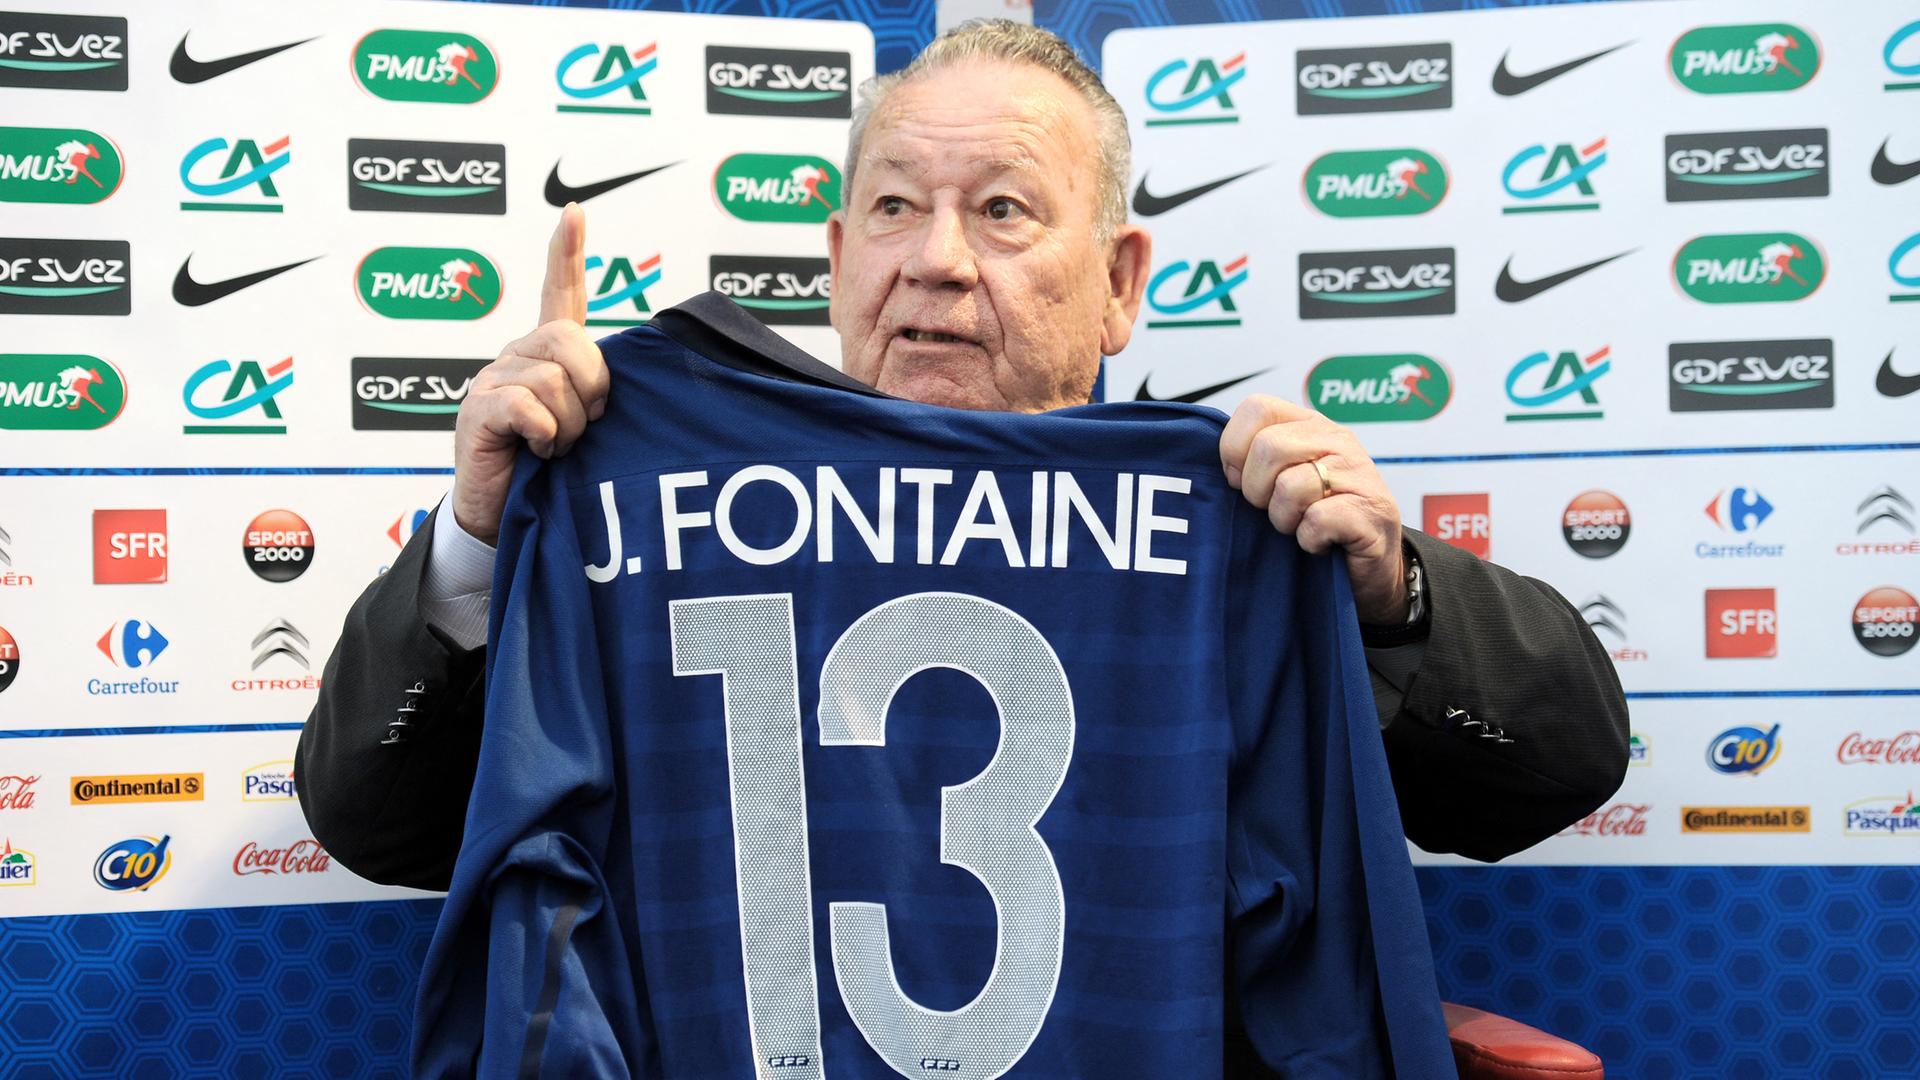 Das Foto zeigt den ehemaligen Fußballspieler Just Fontaine, der ein blaues Trikot mit dem Namen Fontaine und der Nummer 13 hochhält.